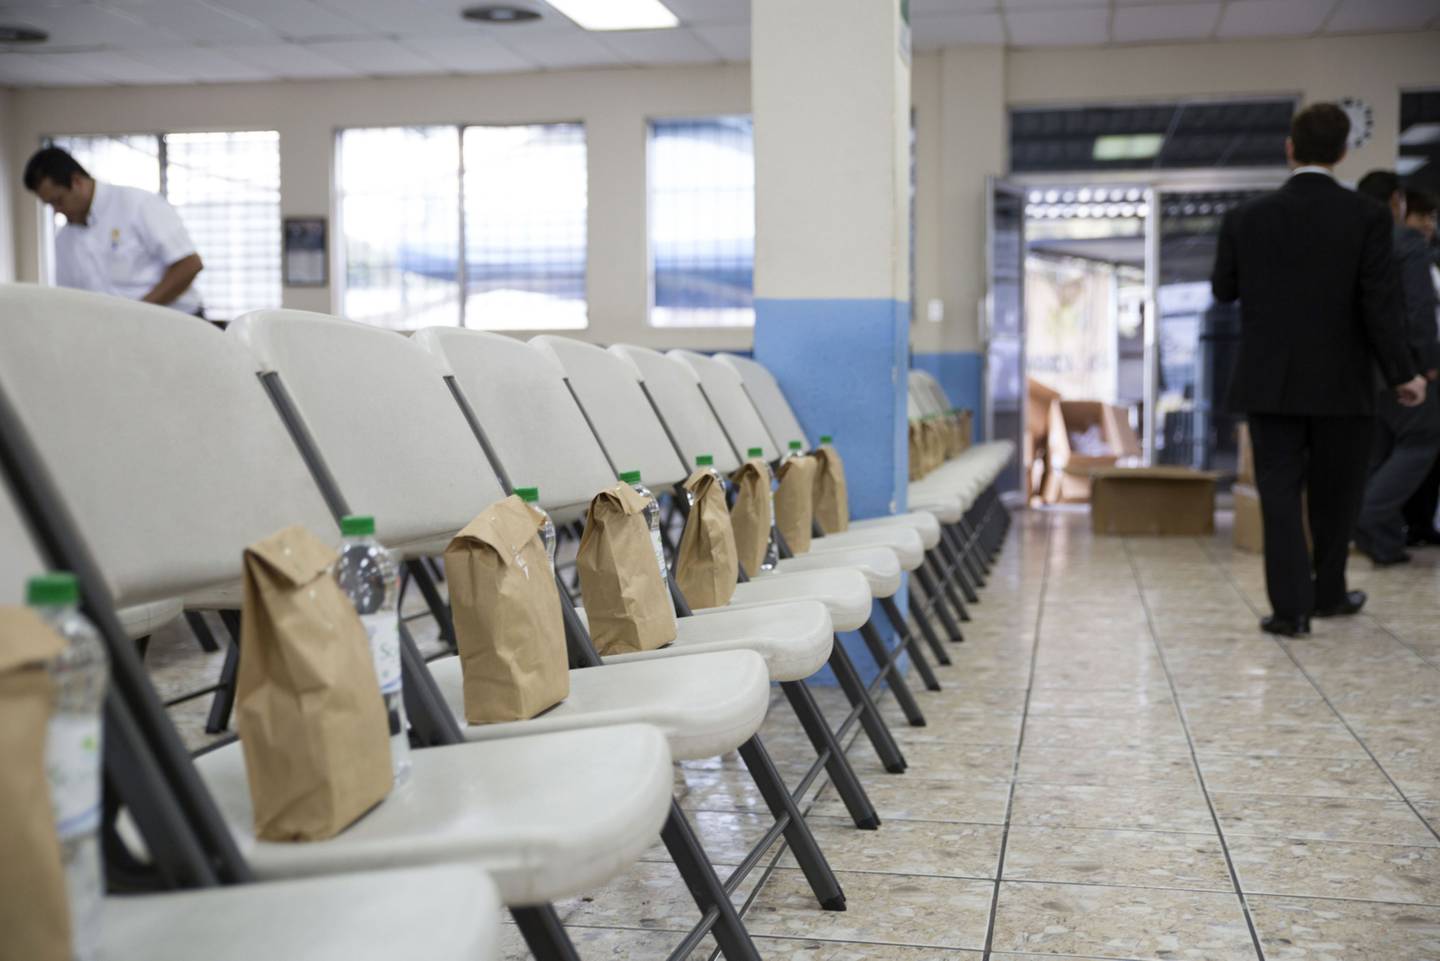 Los guatemaltecos deportados son recibidos por personal de Migración a quienes les entregan una bolsa con alimentos a su arribo al país.dfd